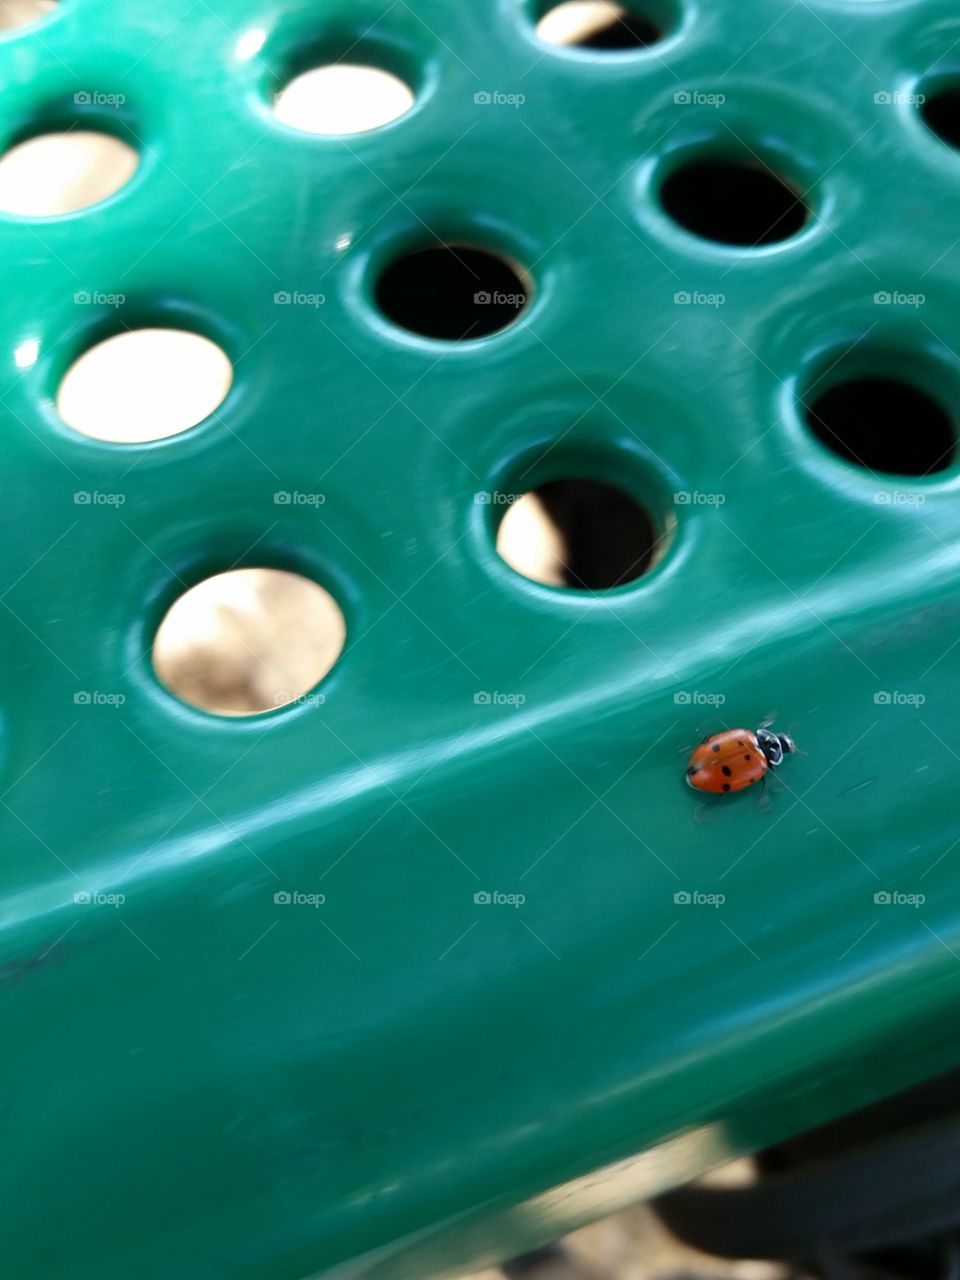 Ladybug crawl